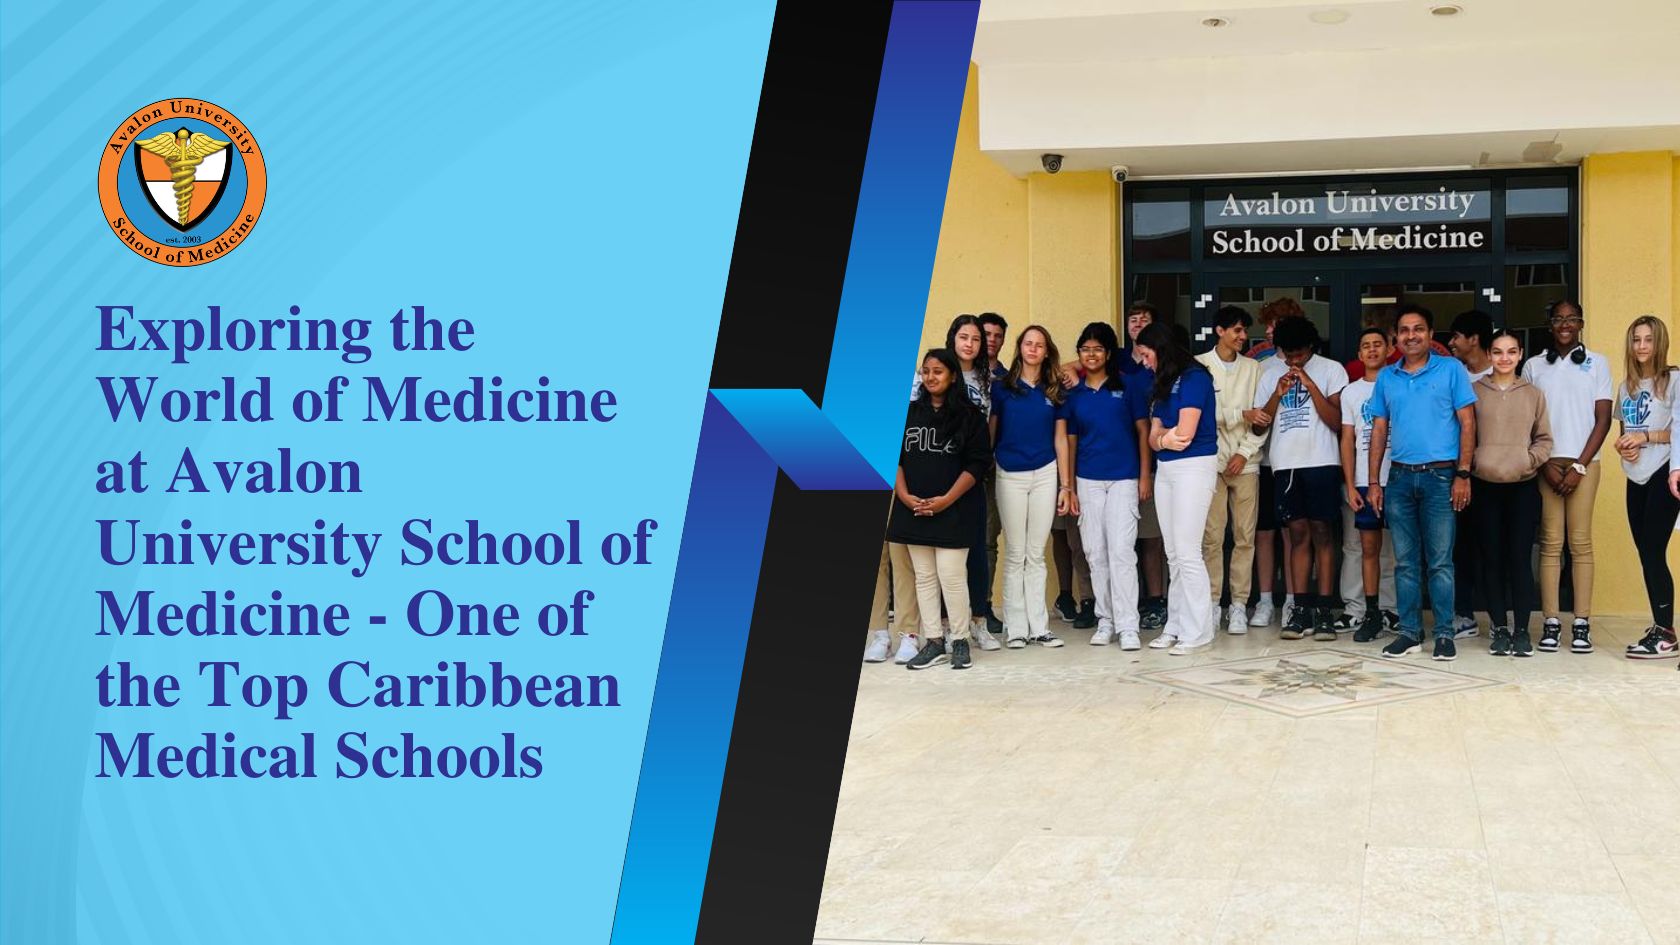 Top Caribbean Medical Schools